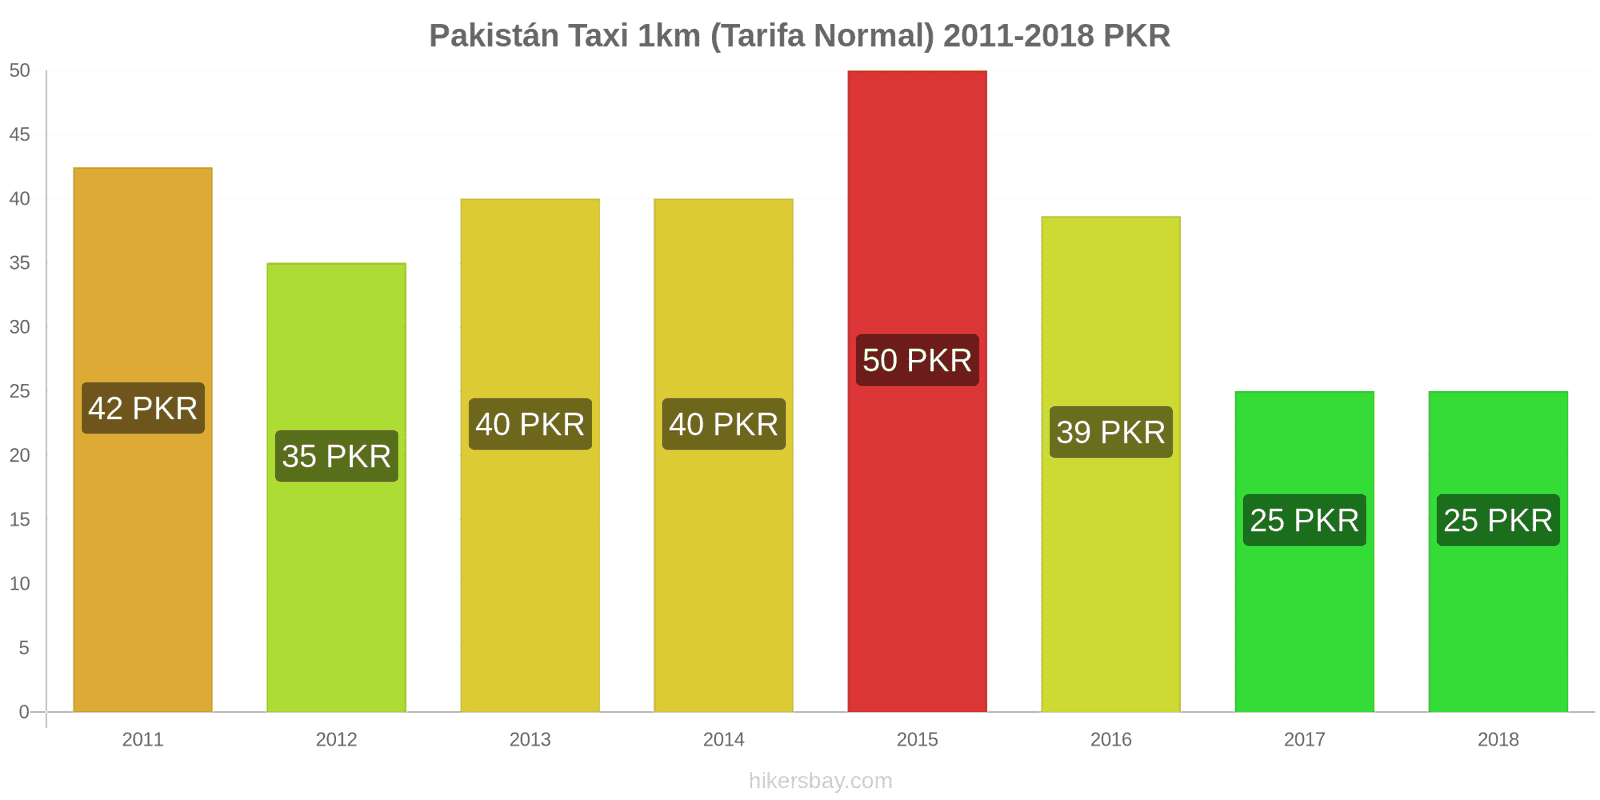 Pakistán cambios de precios Taxi 1km (tarifa normal) hikersbay.com